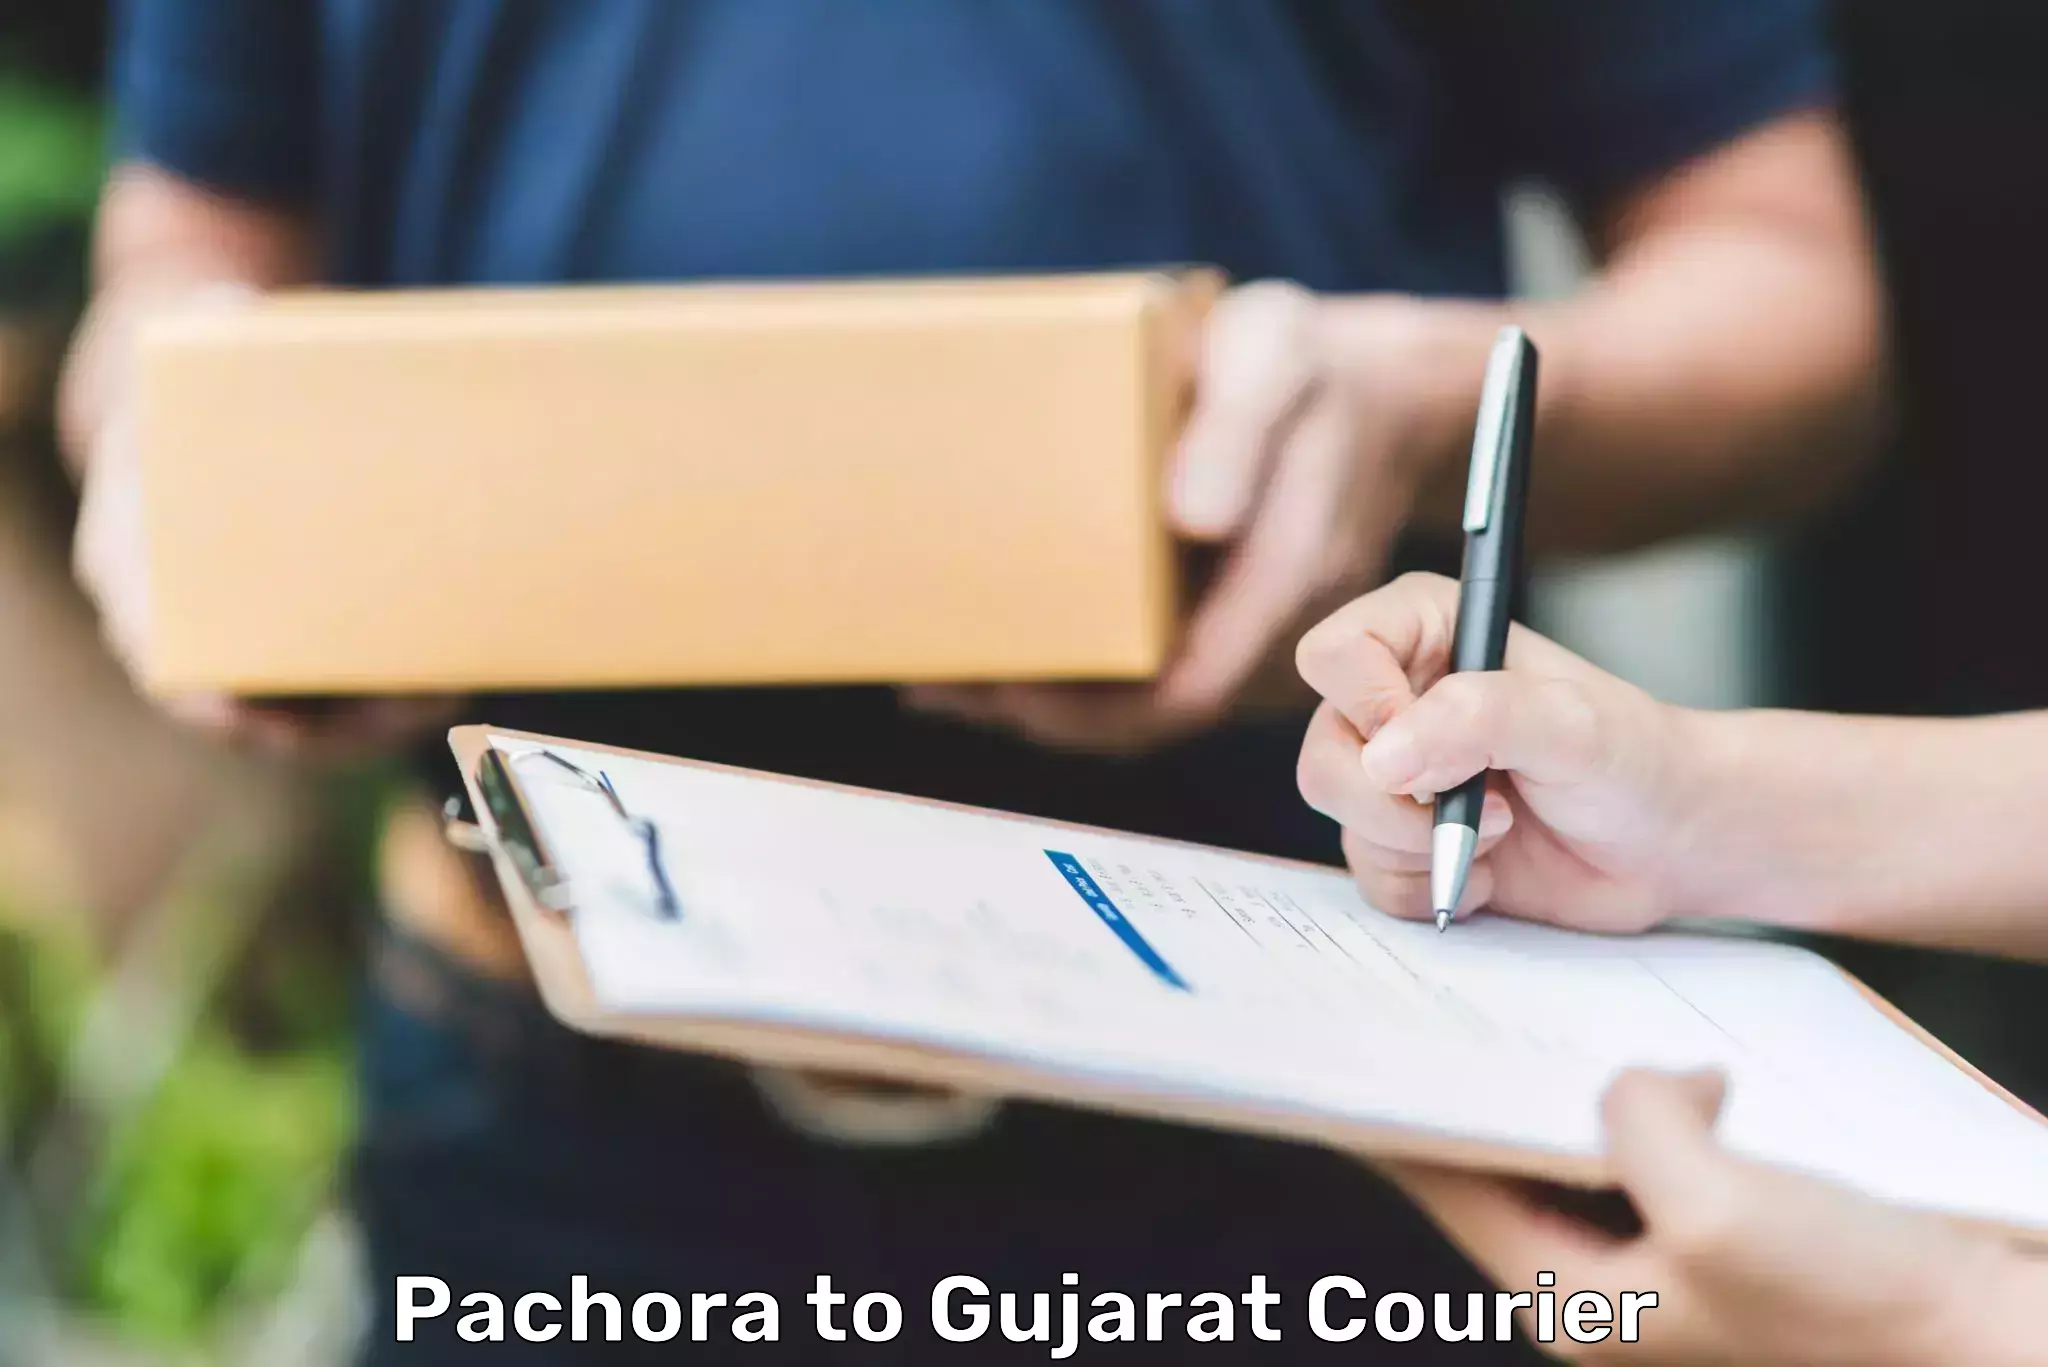 Bulk courier orders Pachora to Rapar